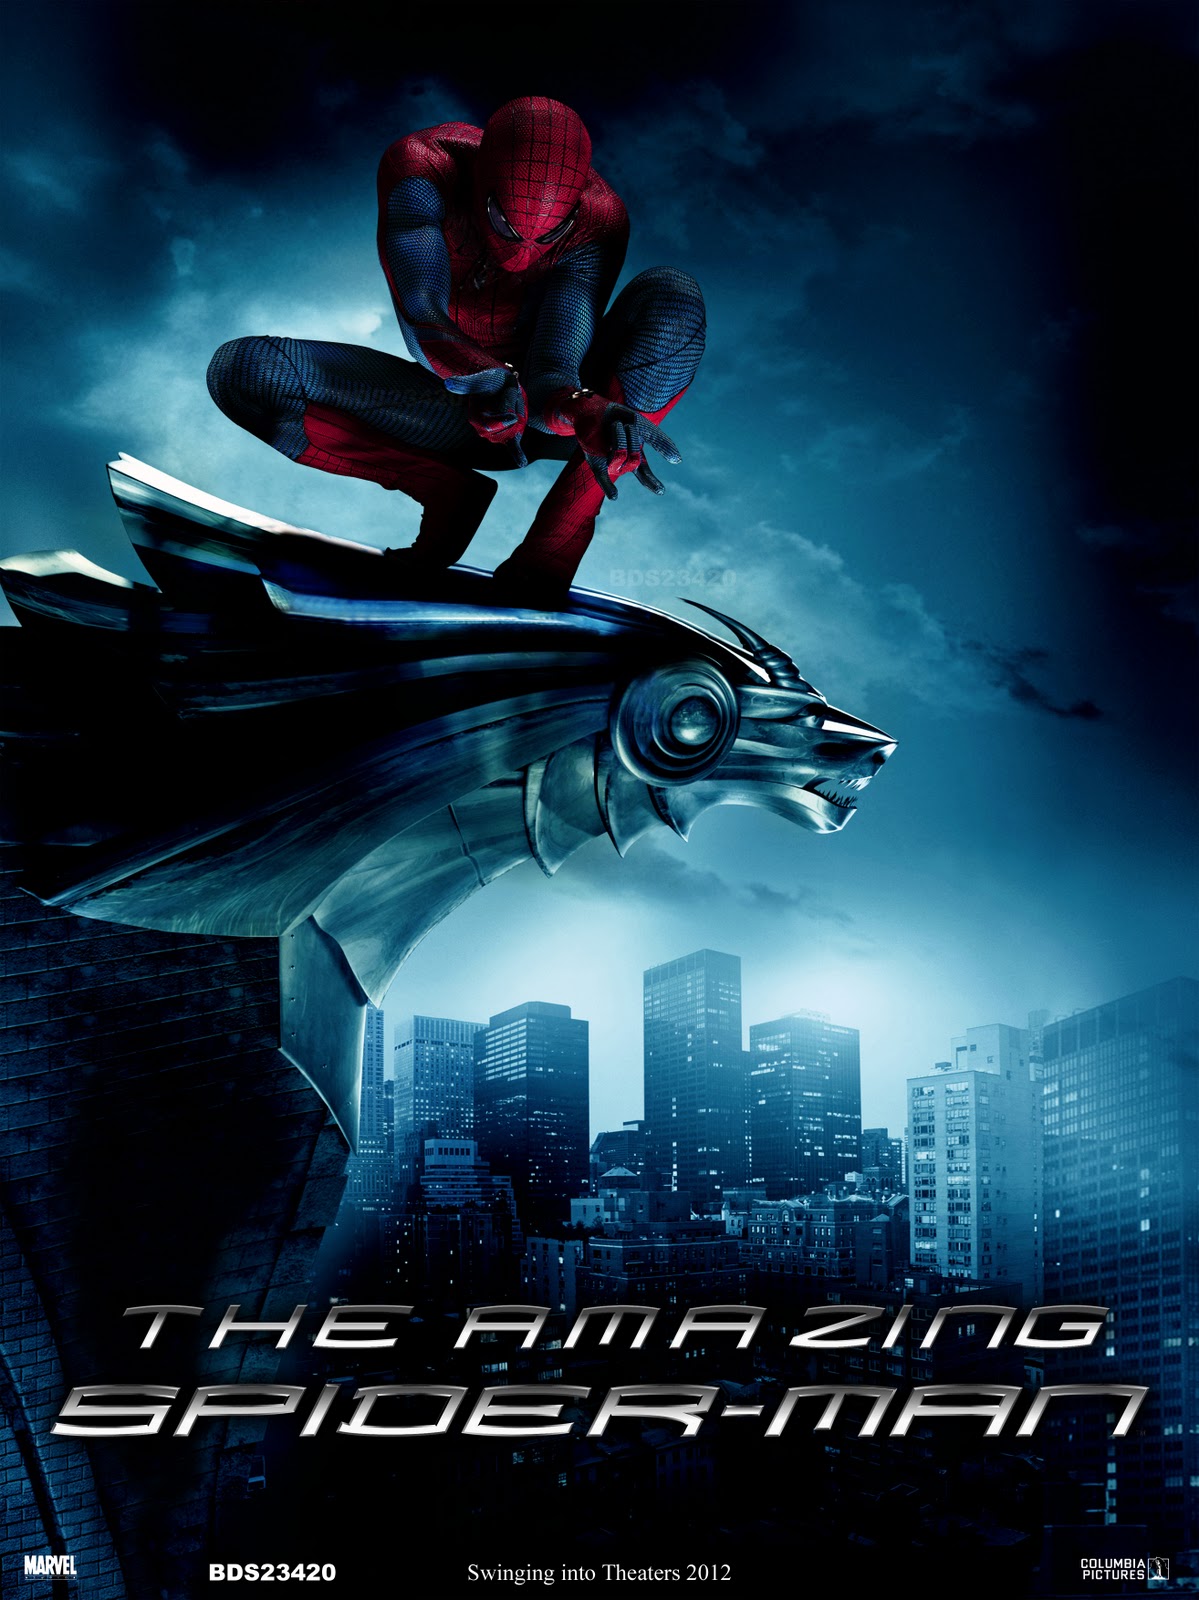 http://2.bp.blogspot.com/-m3W_kon4hCE/UATnM4YXdWI/AAAAAAAABQU/F6gzCzxDB30/s1600/The-Amazing-Spider-Man-2012.jpg